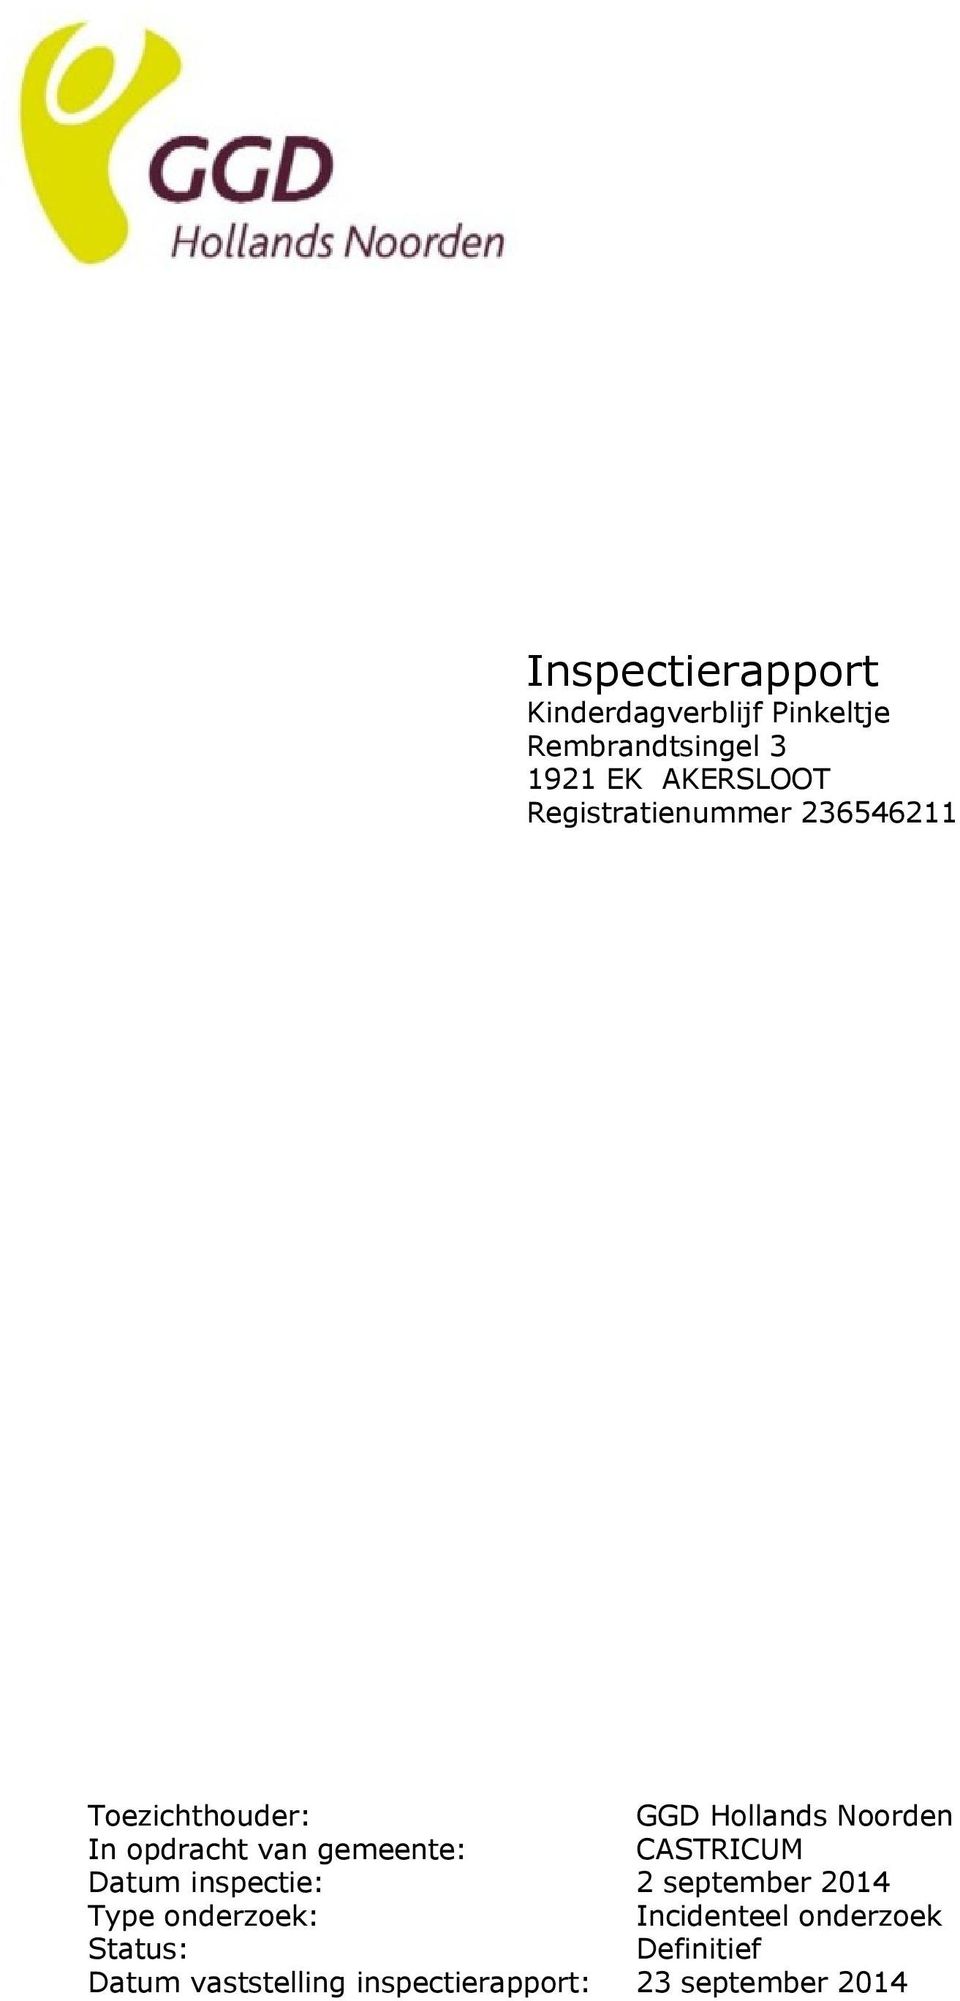 gemeente: CASTRICUM Datum inspectie: 2 september 2014 Type onderzoek: Incidenteel